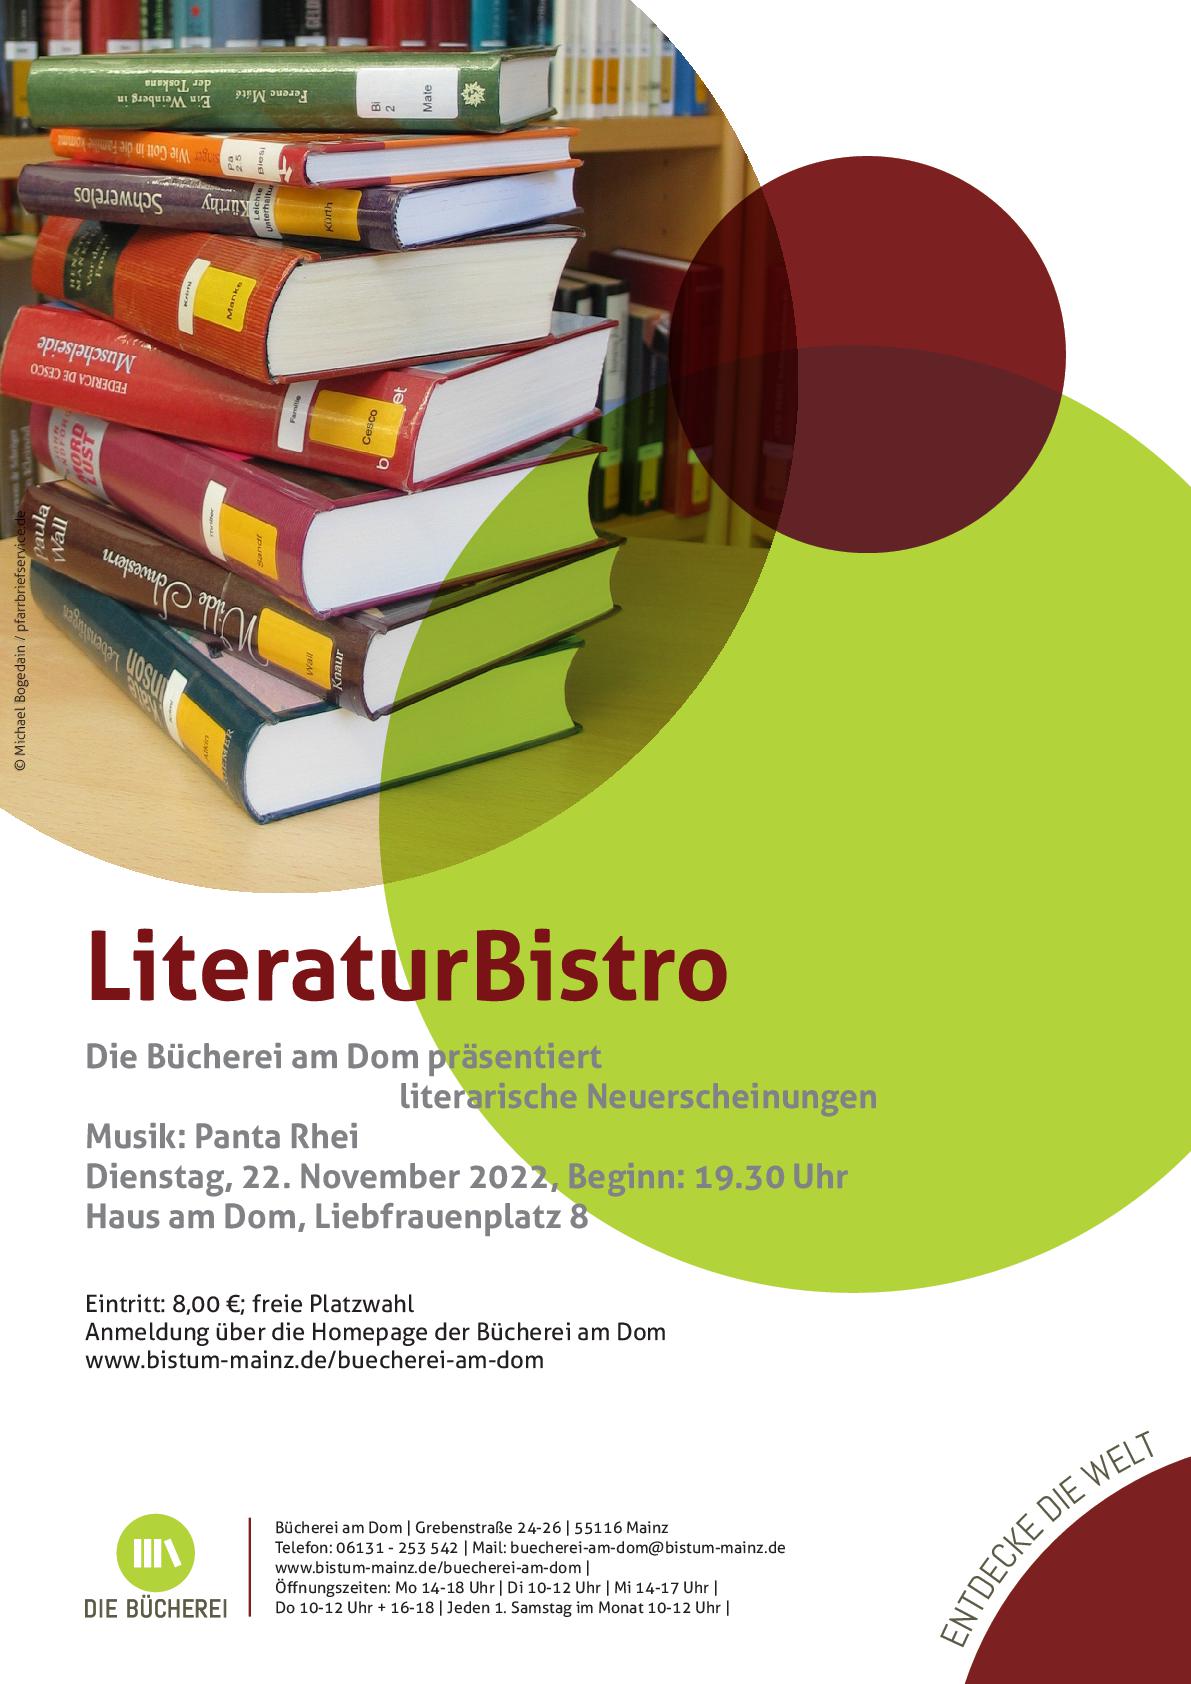 LiteraturBistro 2022 (c) Bücherei am Dom Mainz